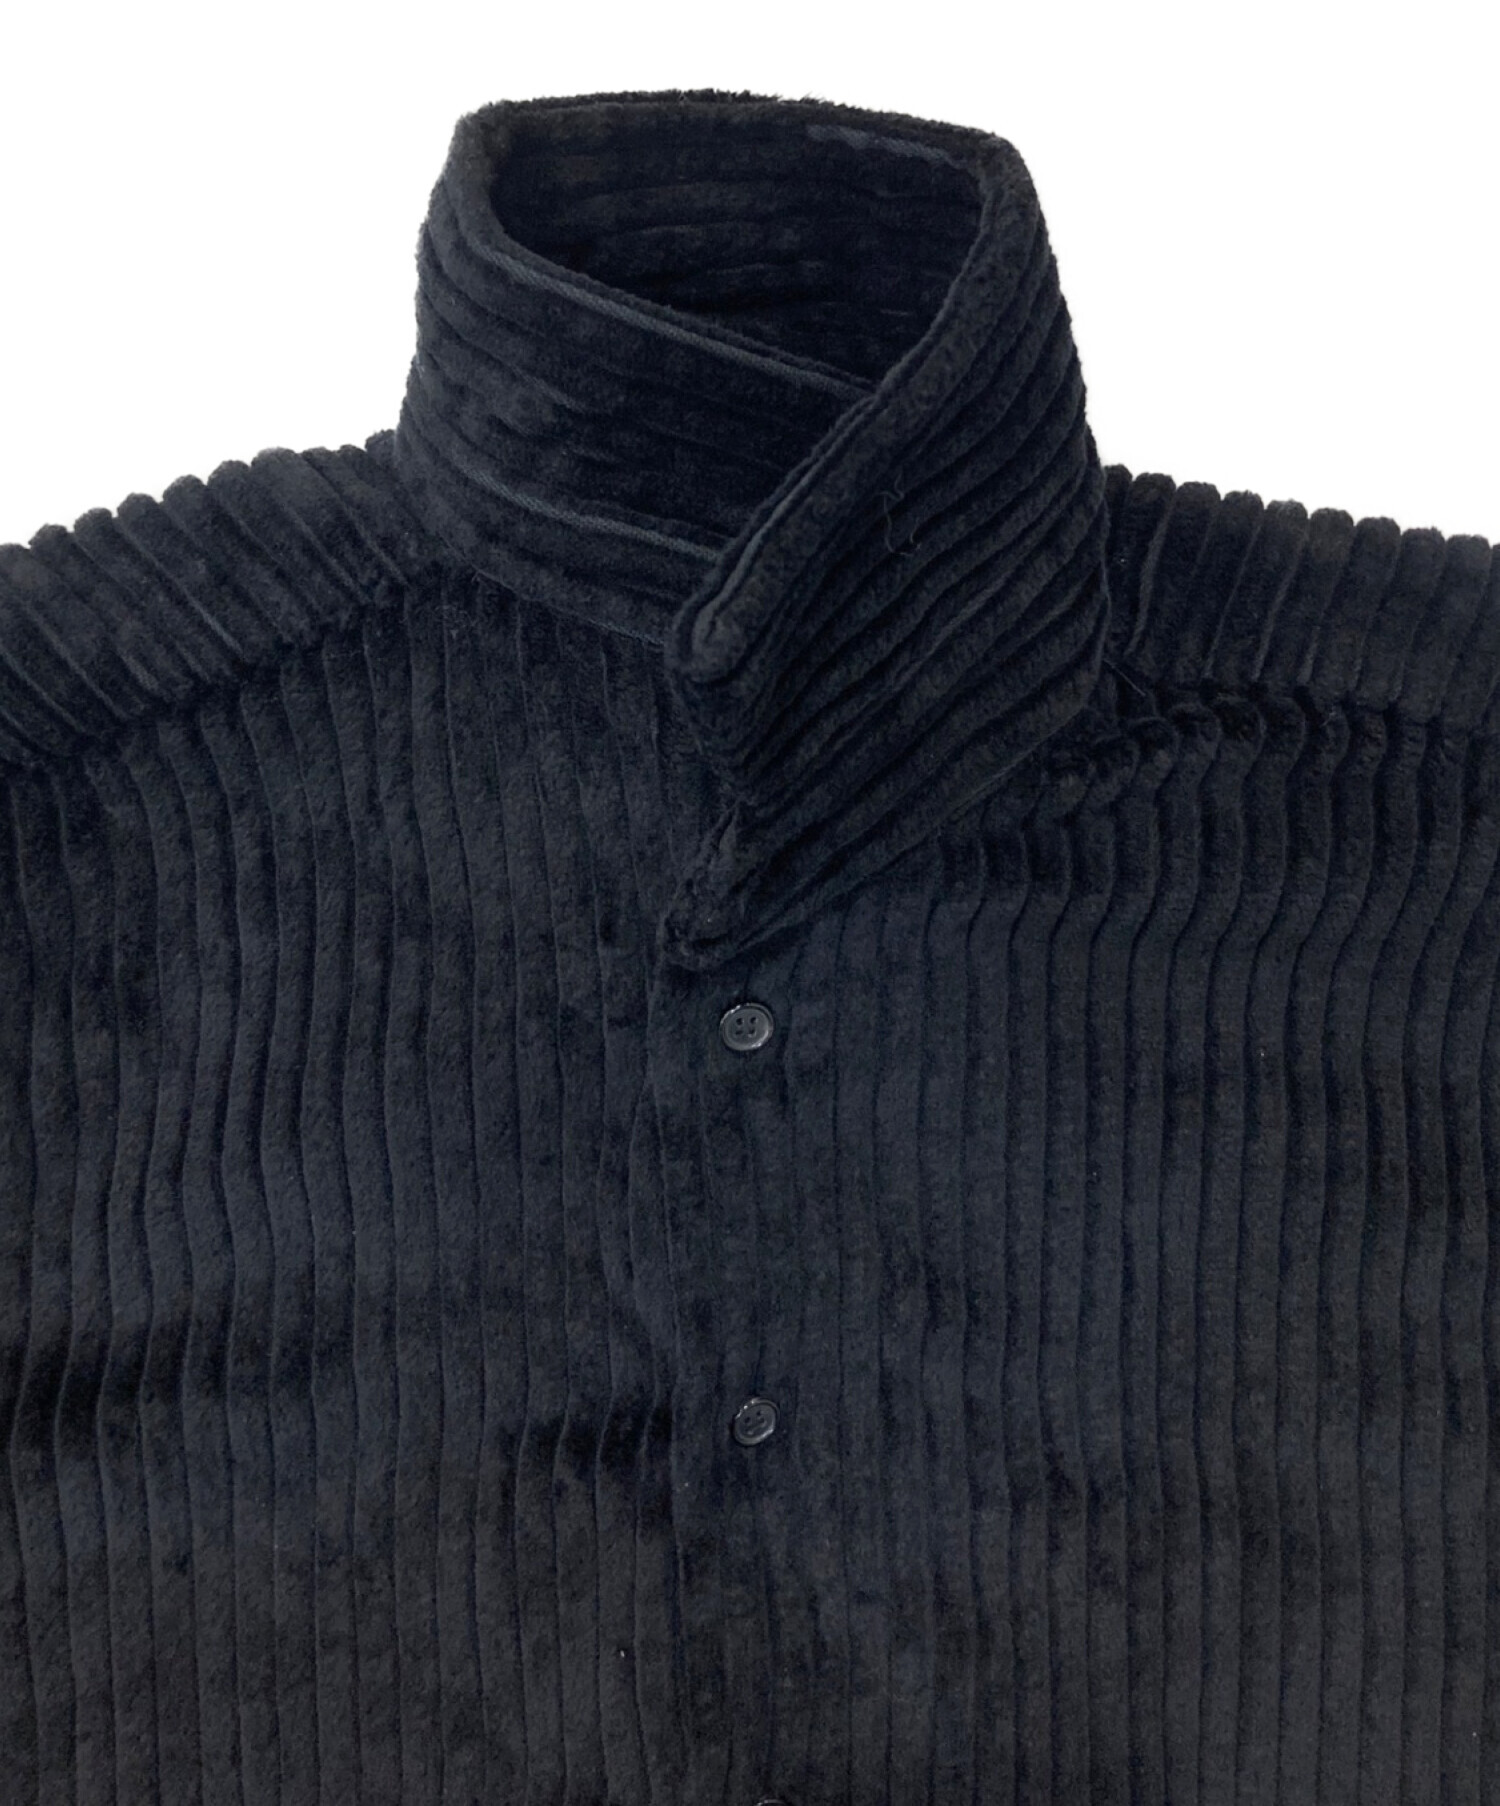 BLESS (ブレス) コーデュロイシャツジャケット BLESS22FW-6 ブラック サイズ:L